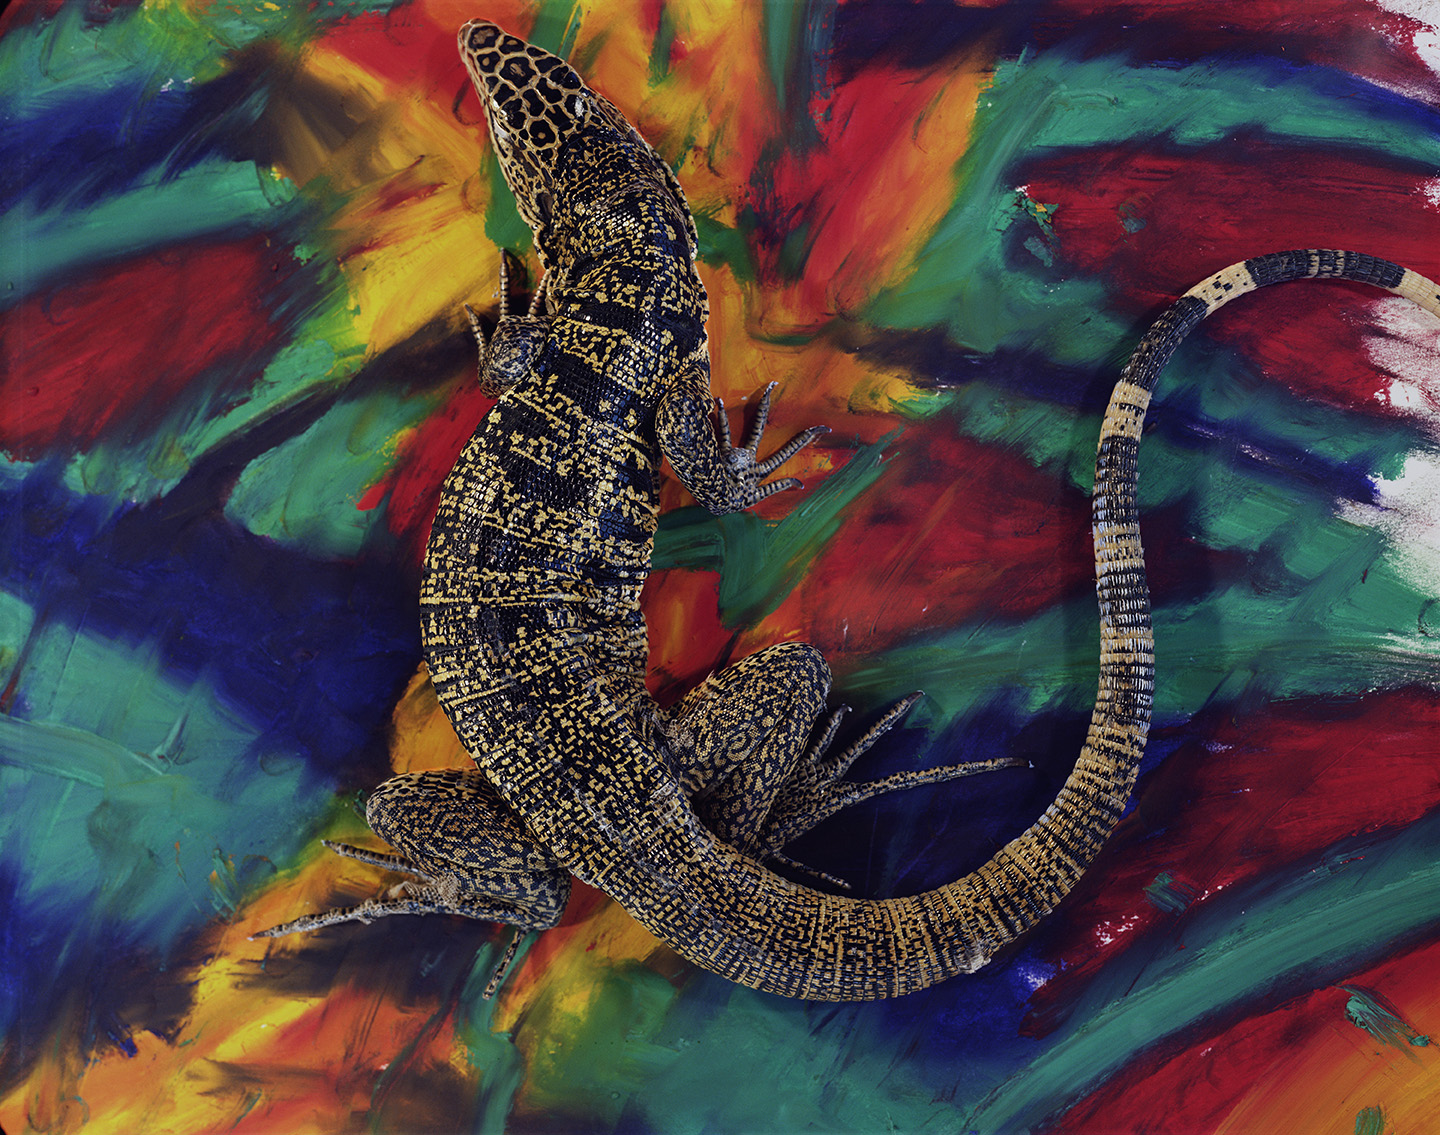 Ivan tegu lizard_oil paint stick.jpg